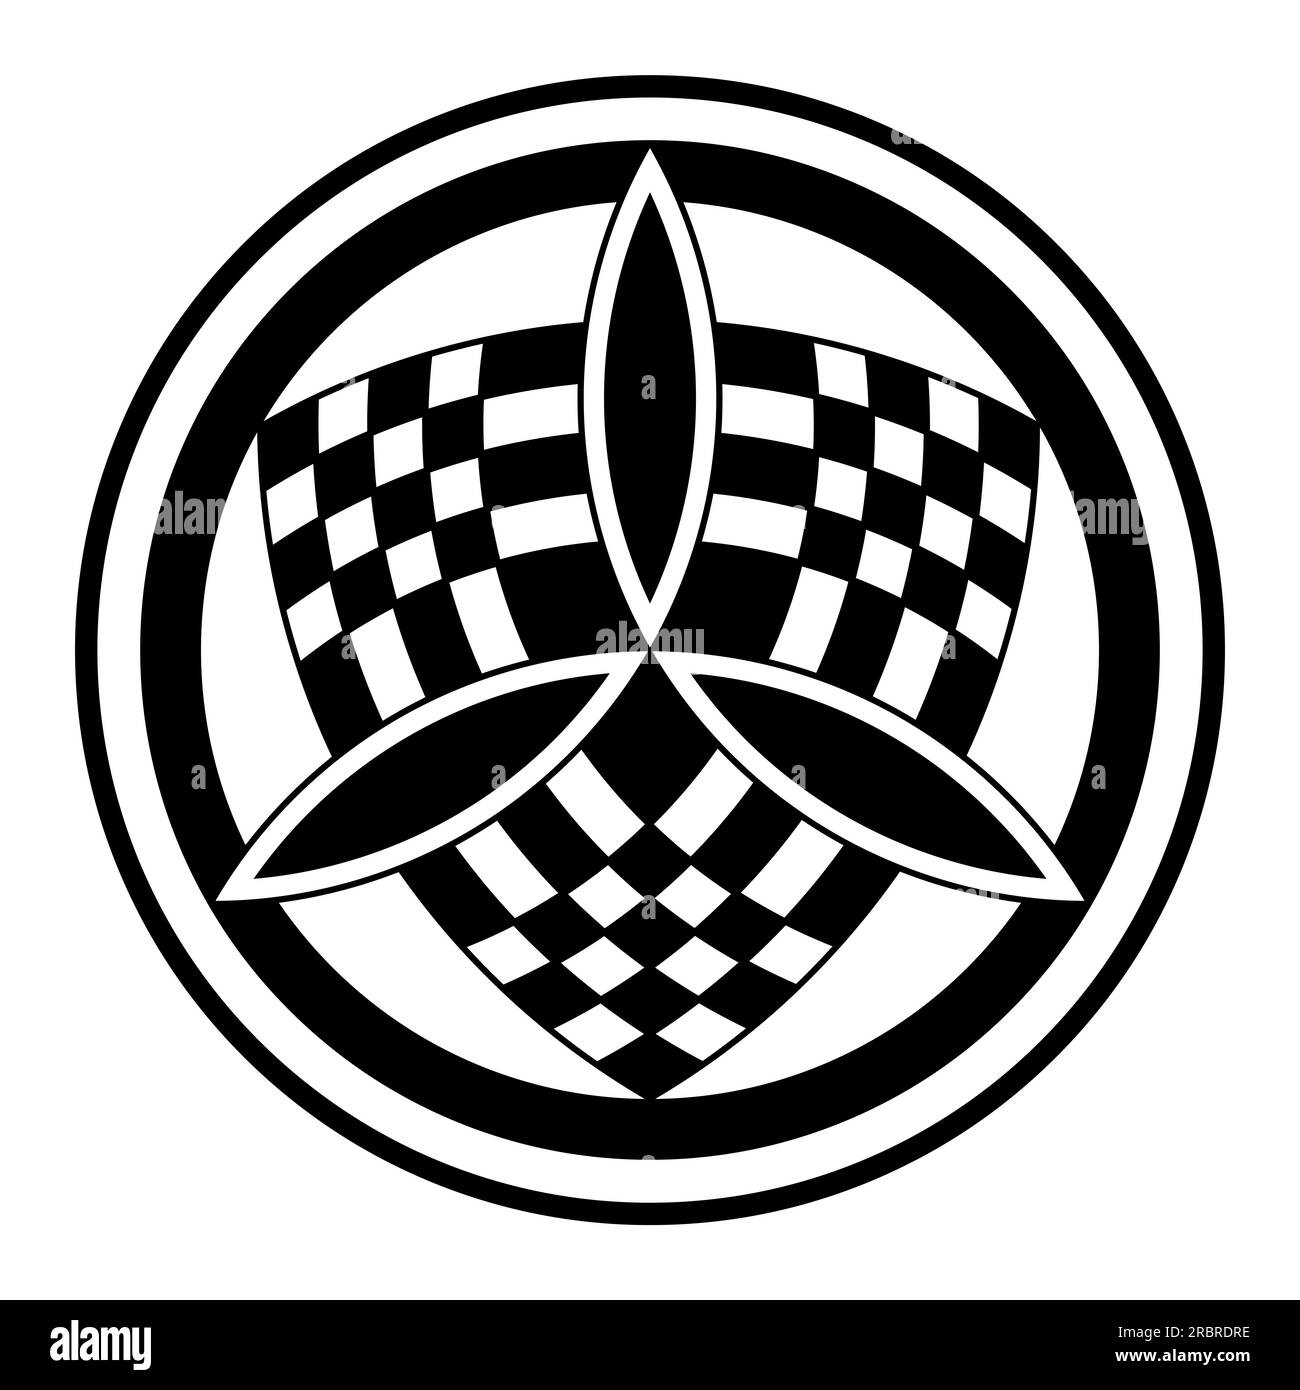 Simbolo della Trinità su un emblema a scacchi all'interno di cerchi. Tre lenti vesica piscis formano un triangolo equilatero, sopra uno scudo. Foto Stock